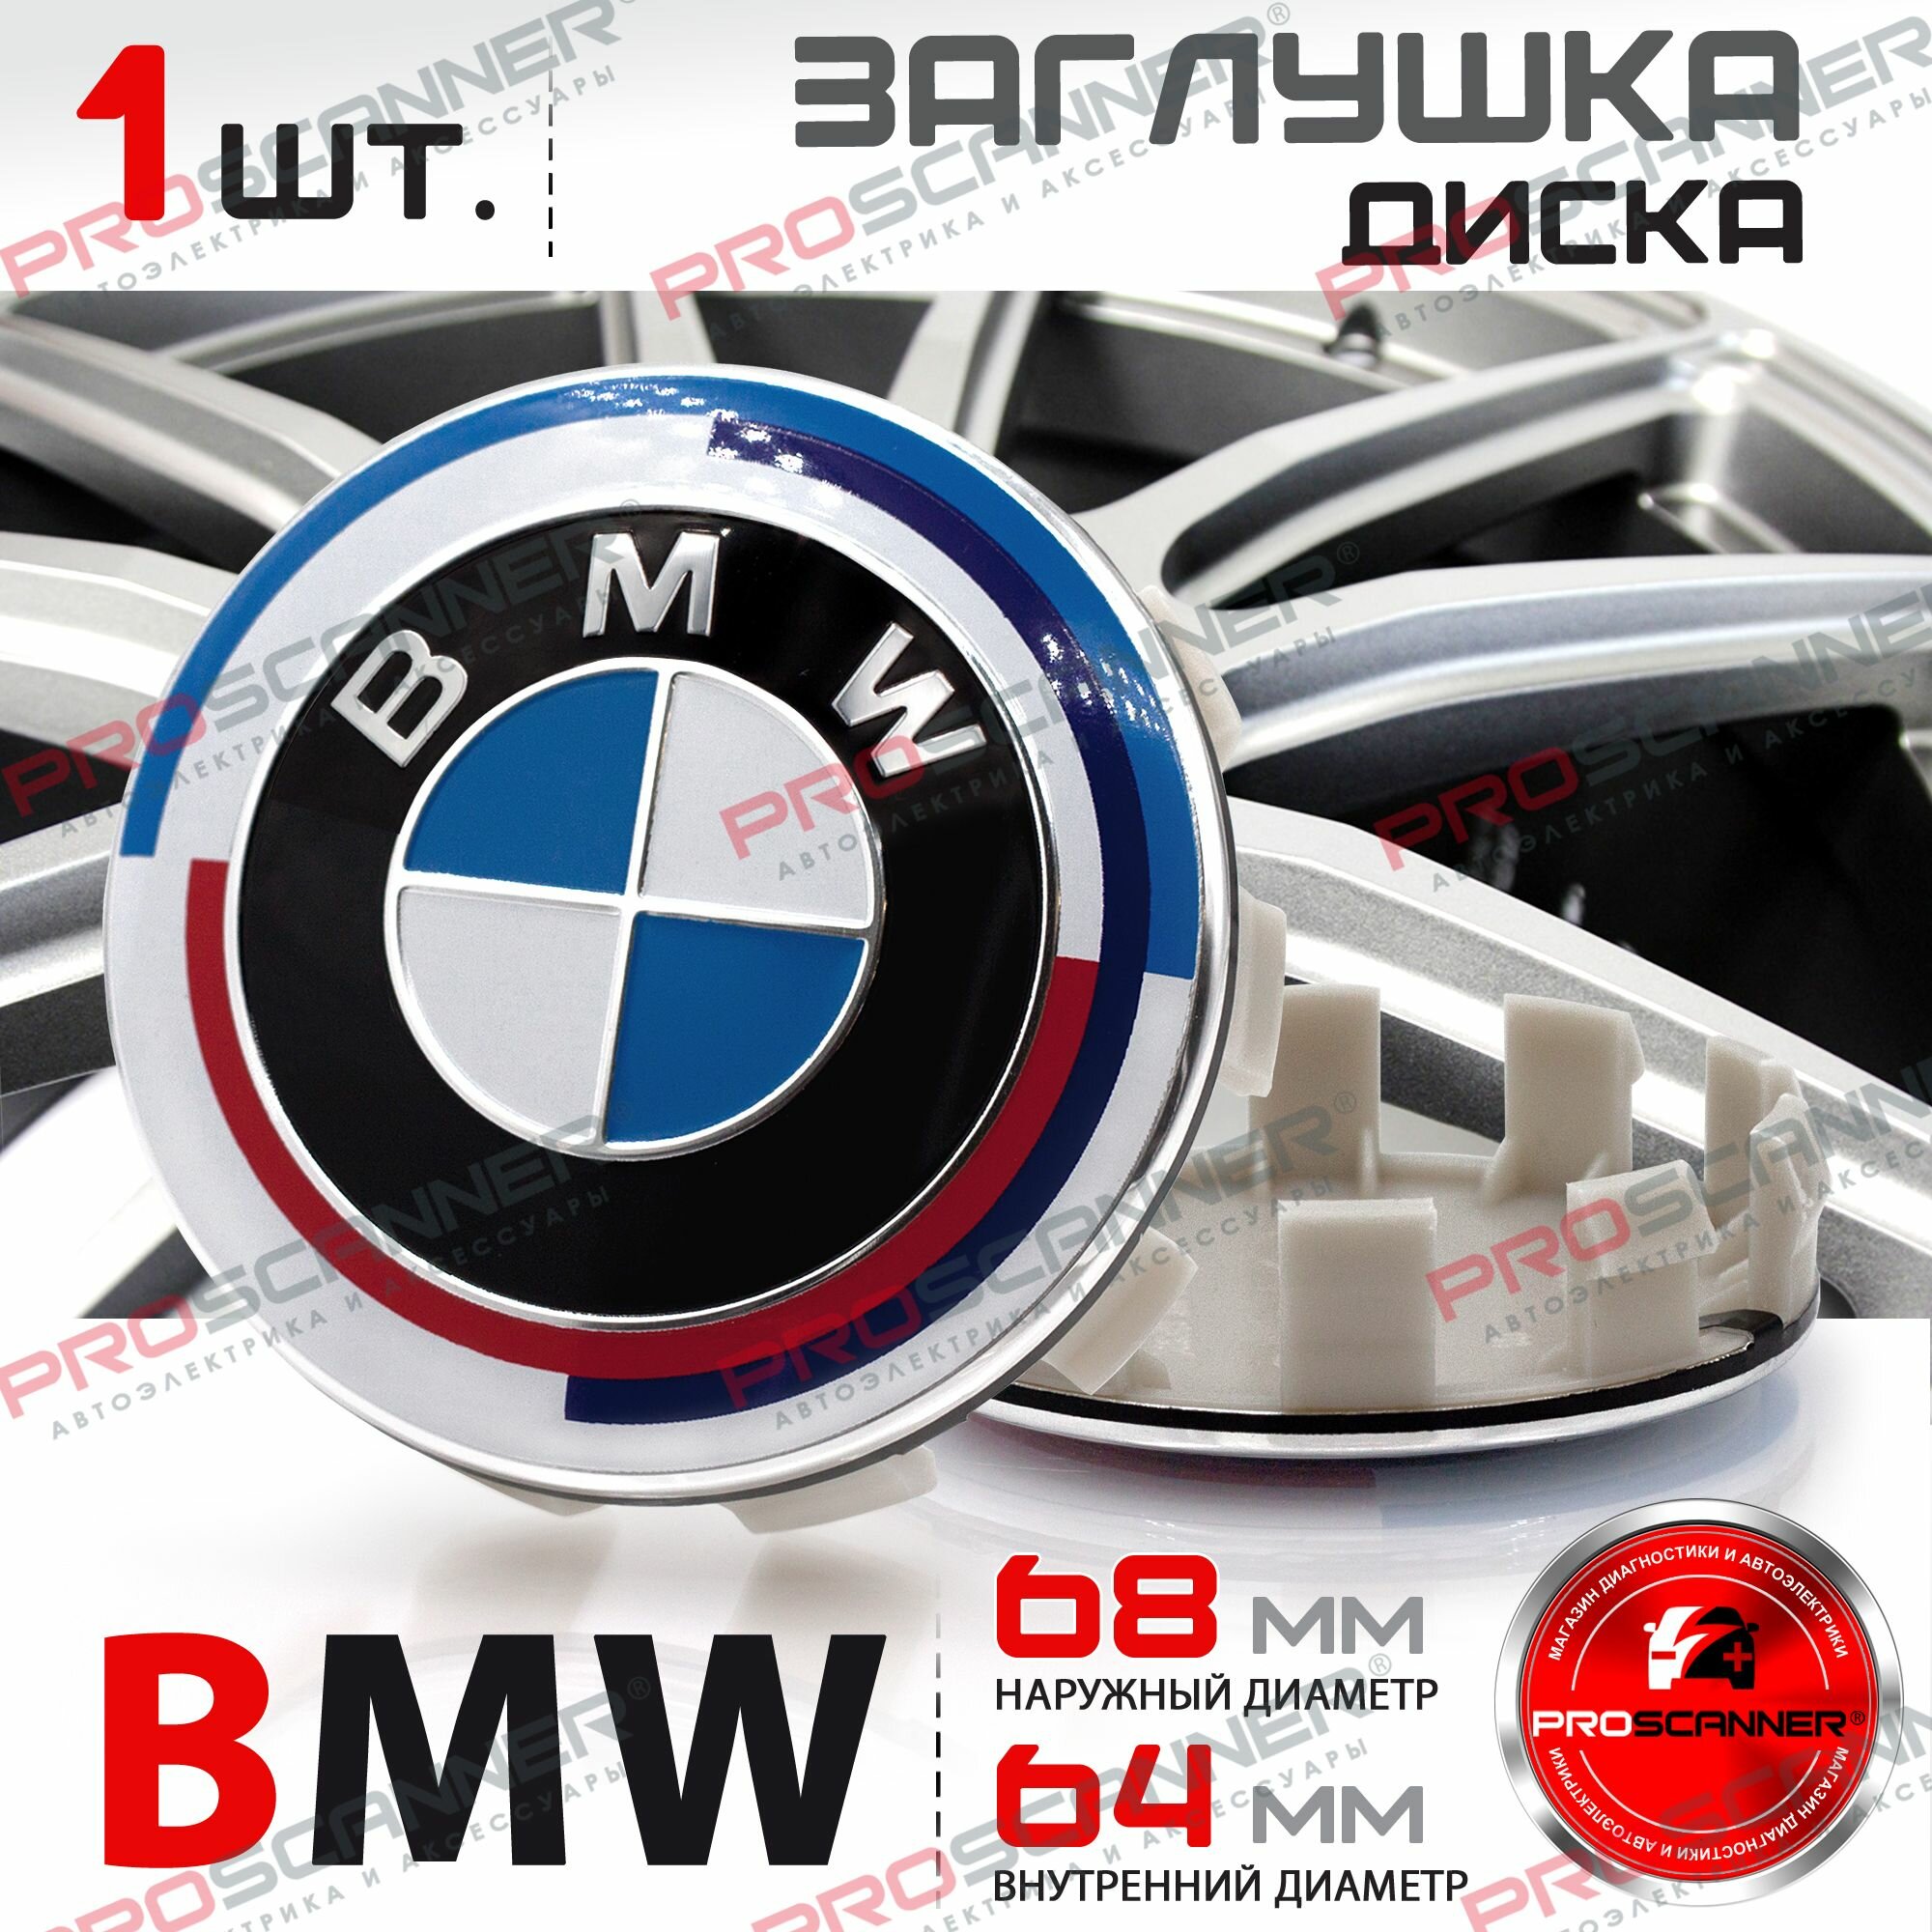 Колпачок заглушка на литой диск колеса для BMW БМВ 68 мм 36136783536 - 1 штука юбилейная серия